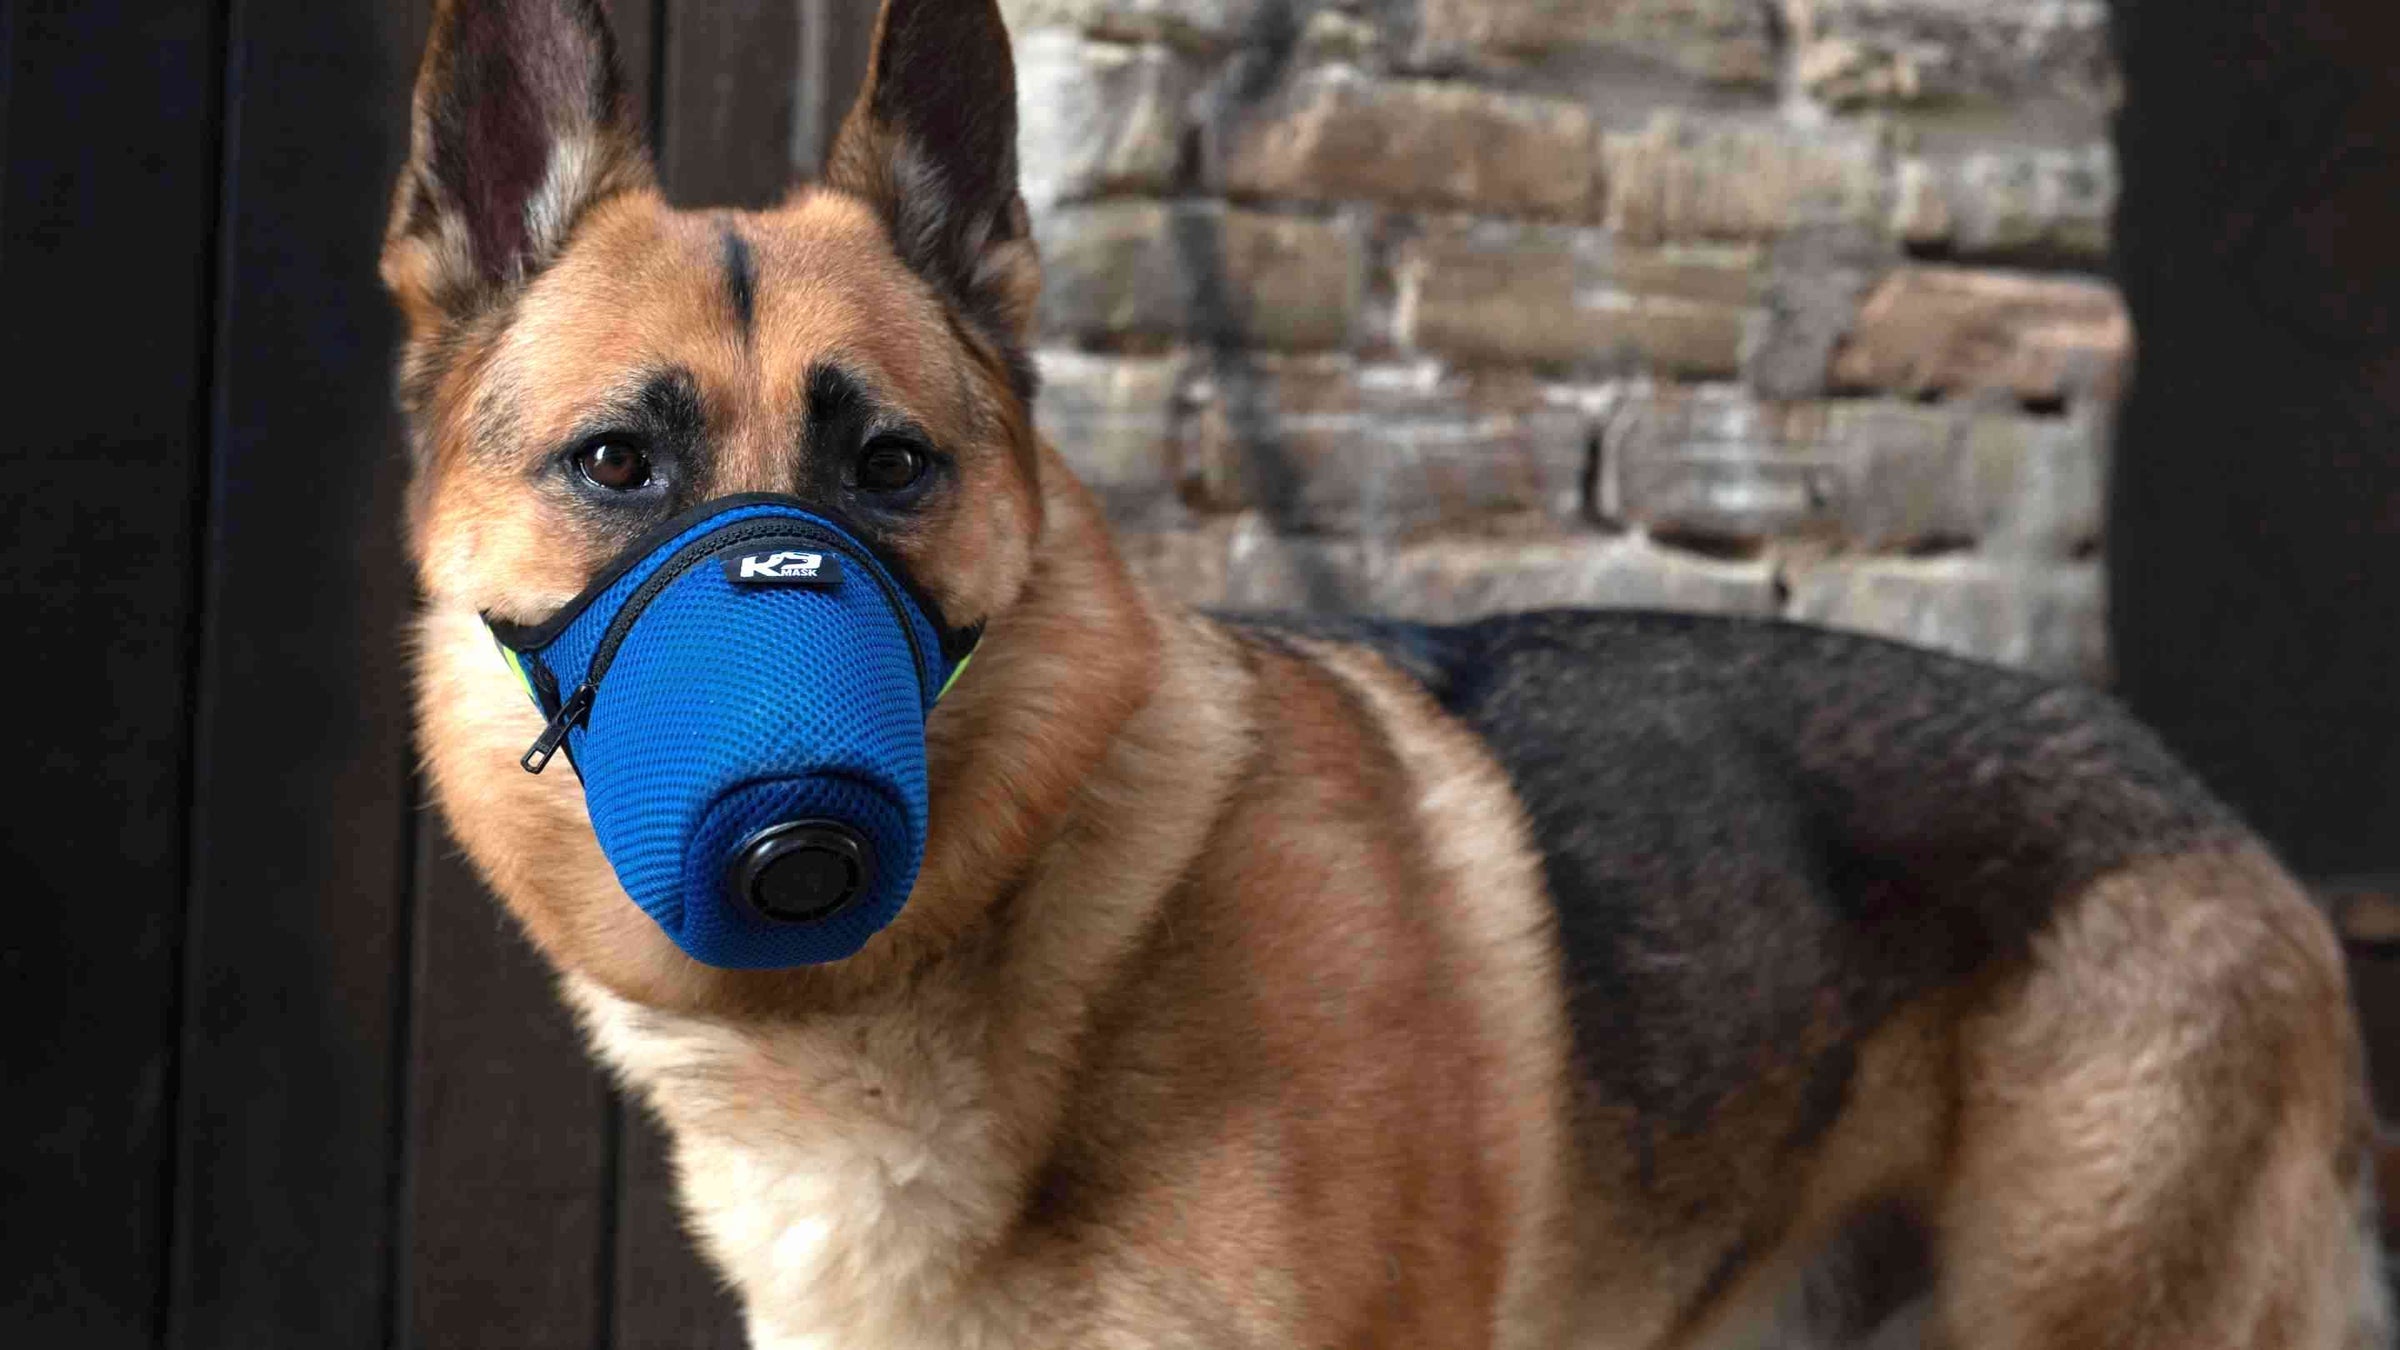 K9 Tub Ceev Xwm Dog Unit Opioid Fentanyl Mask rau Kev Tiv Thaiv Kev Nyab Xeeb